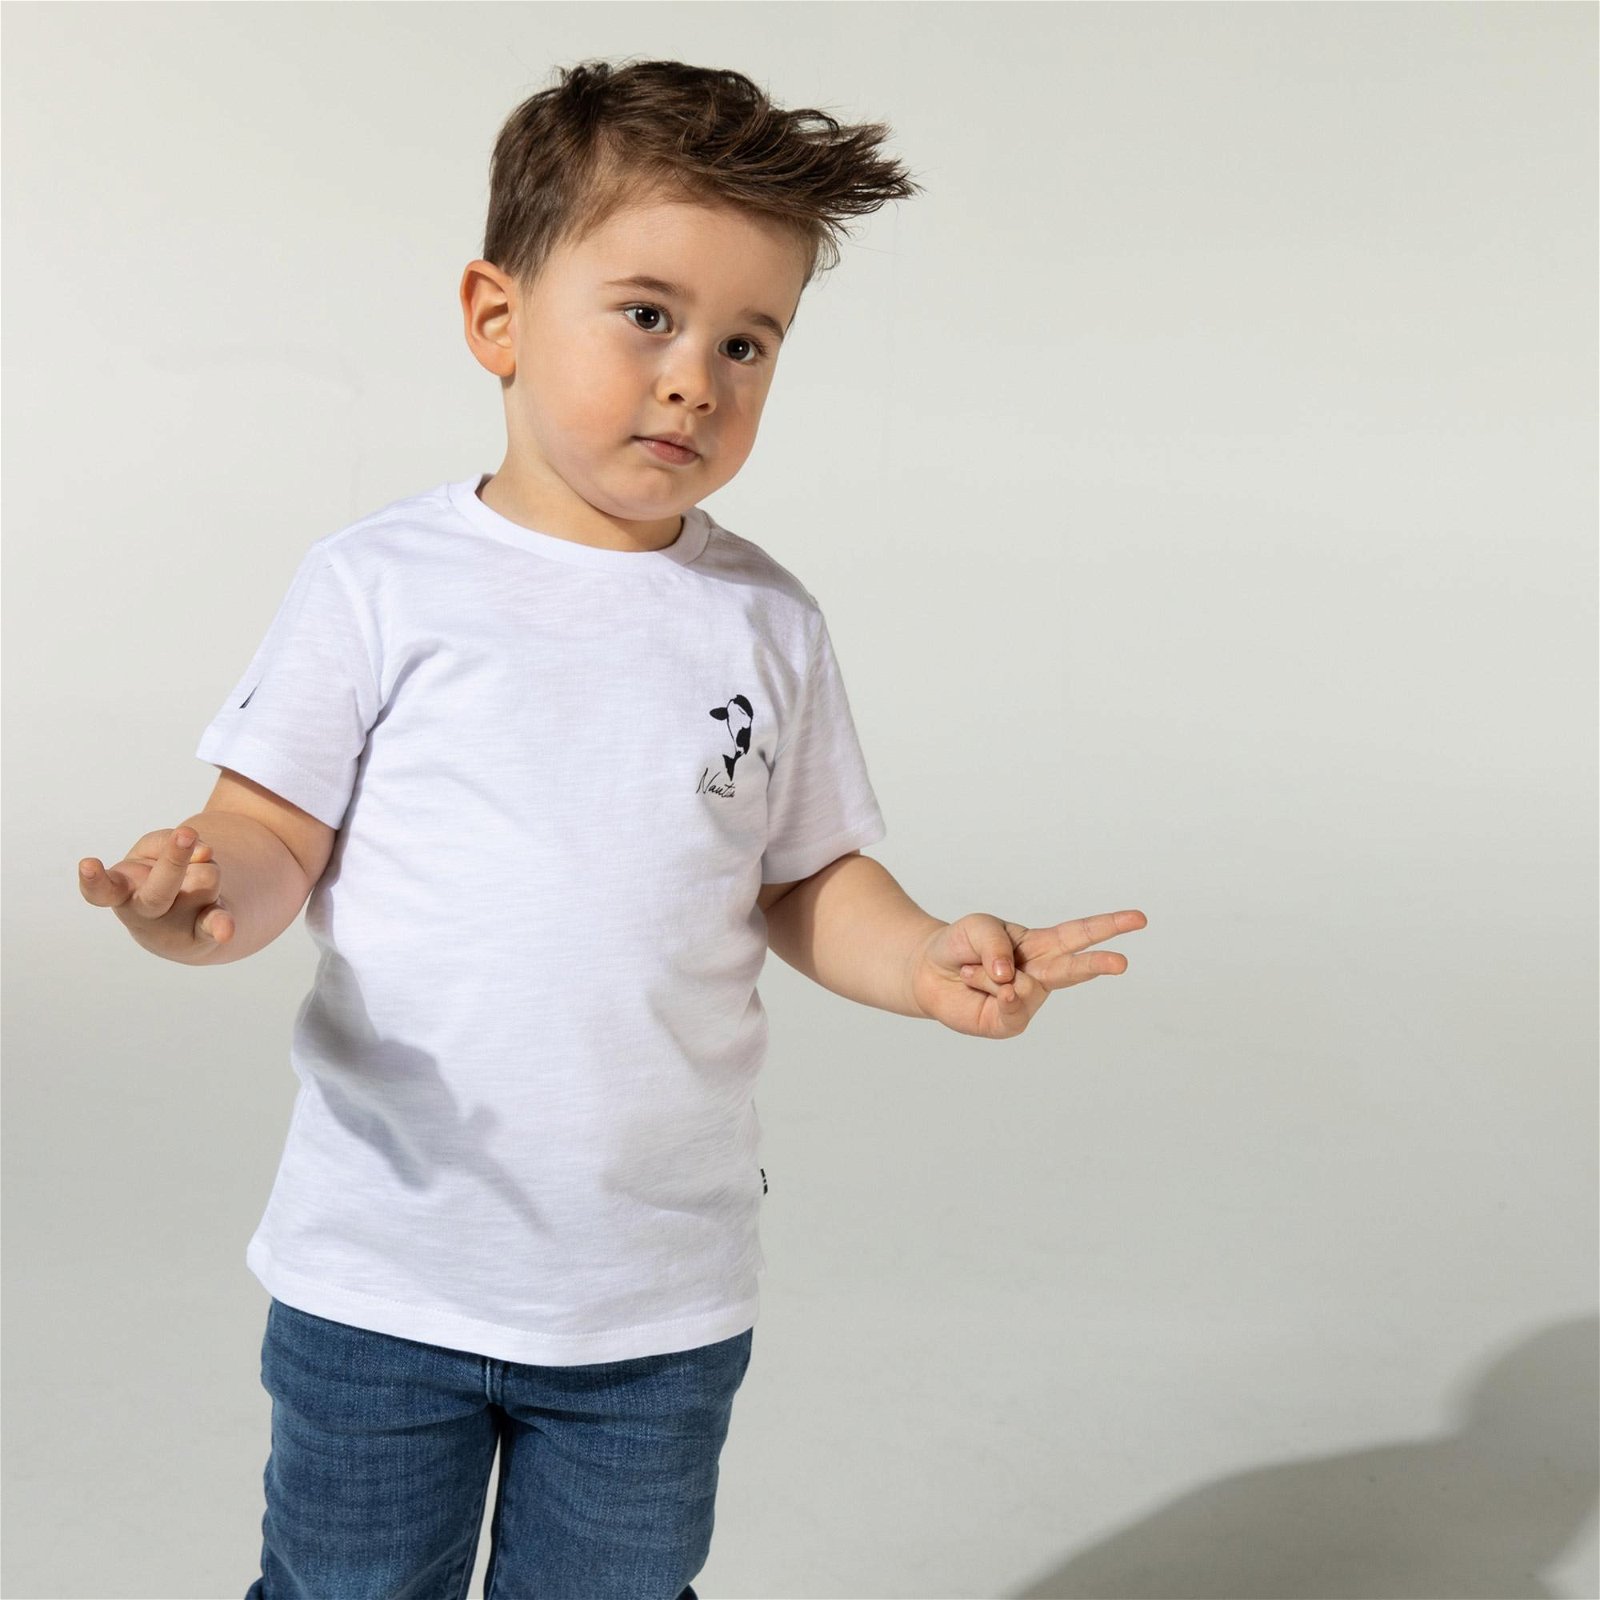 Nautica Erkek Çocuk Beyaz Baskılı T-Shirt